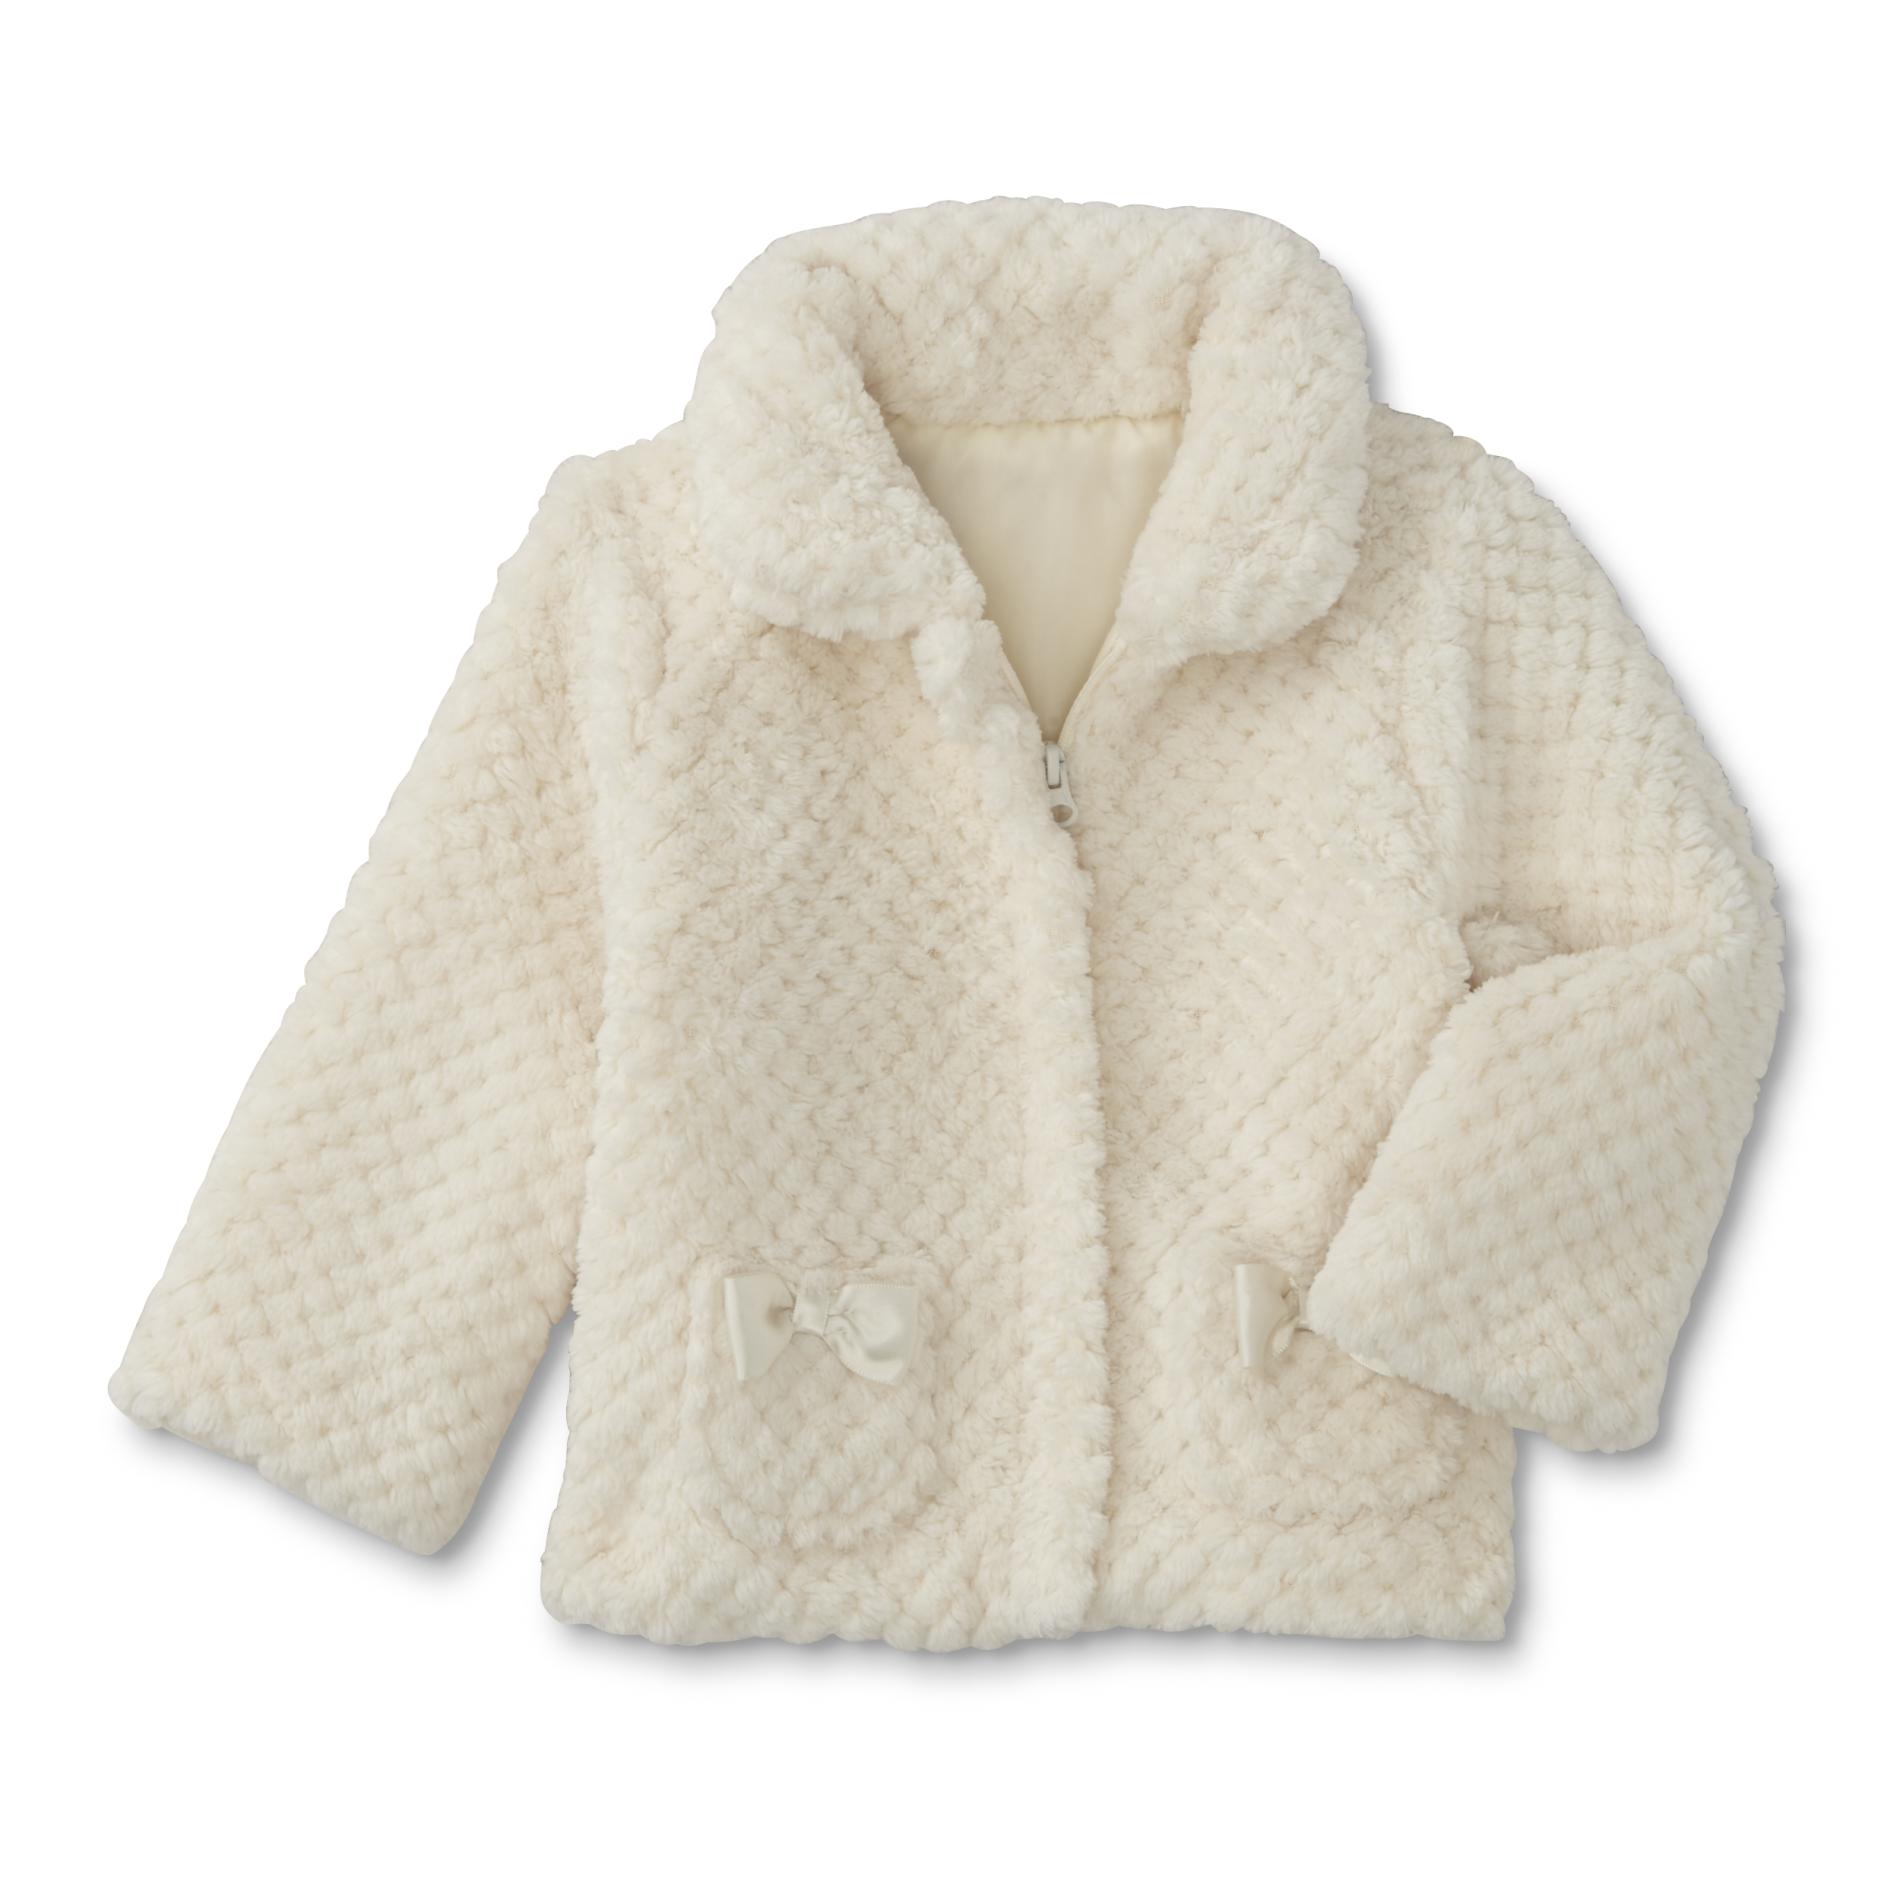 Little Wonders Newborn & Infant Girls' Faux Fur Jacket